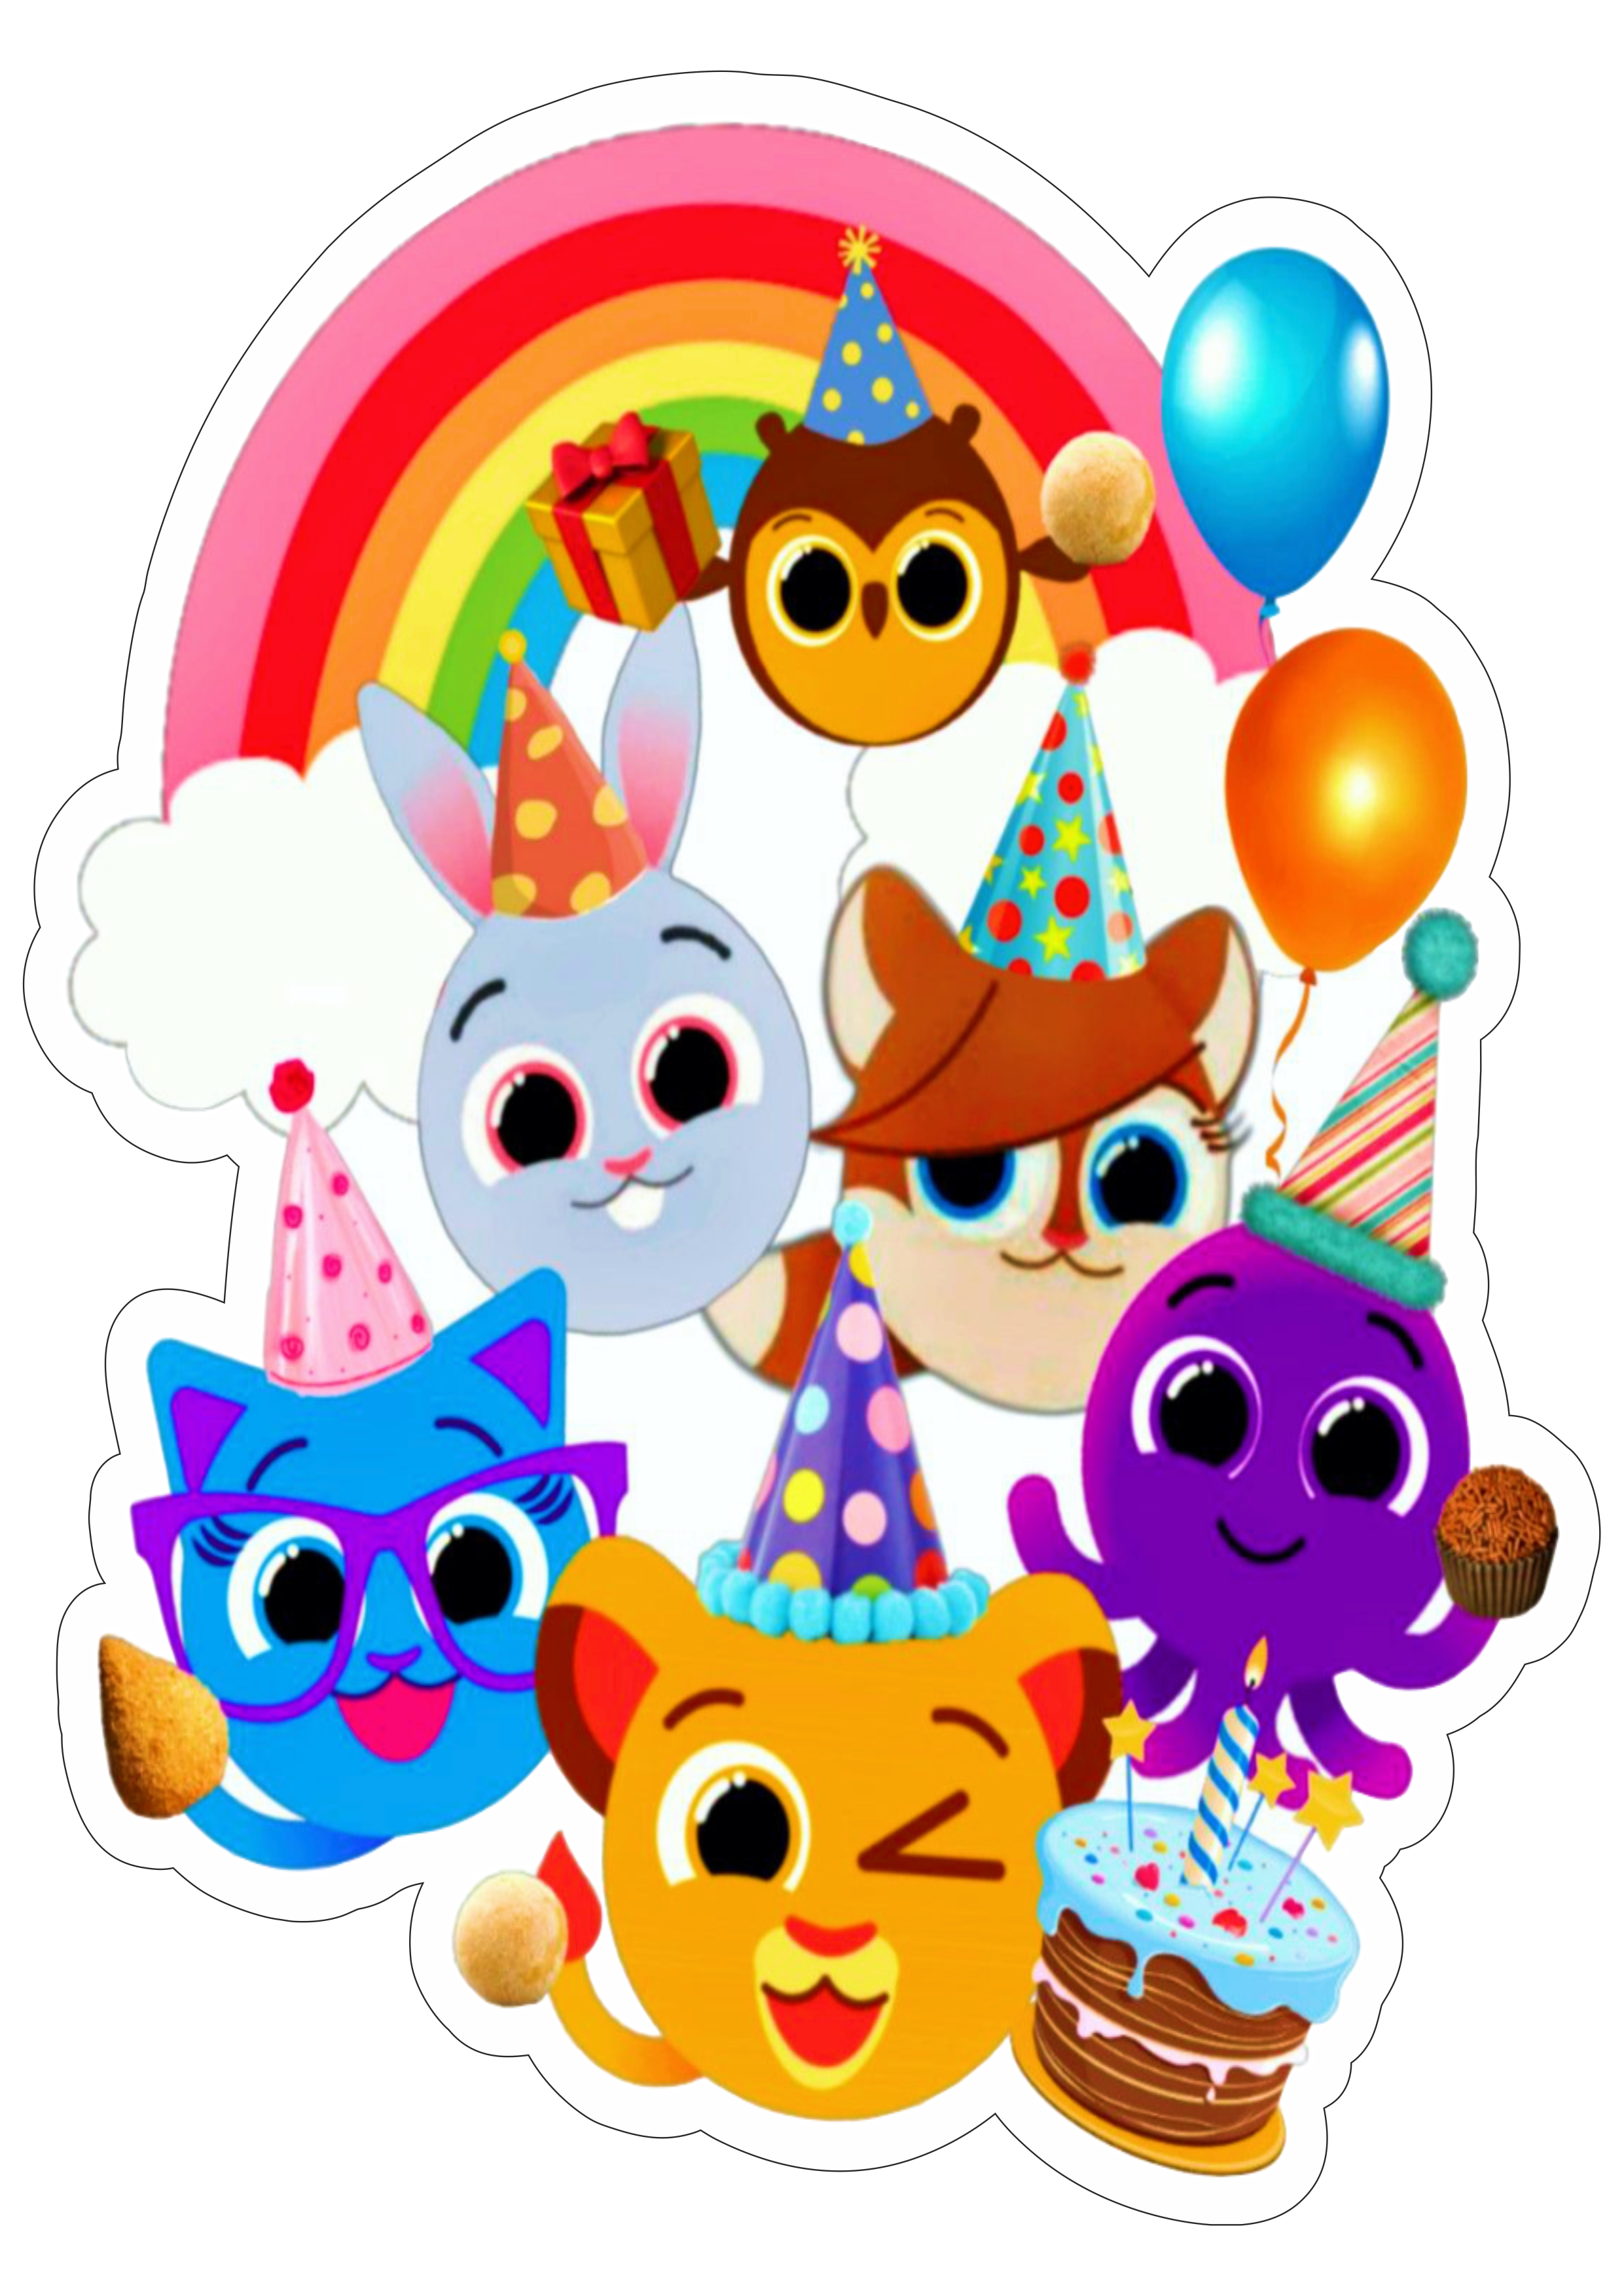 Bolofofos personagem infantil turma arco íris festa de aniversário completa desenho engraçado música pão de queijo youtube kids infantil png